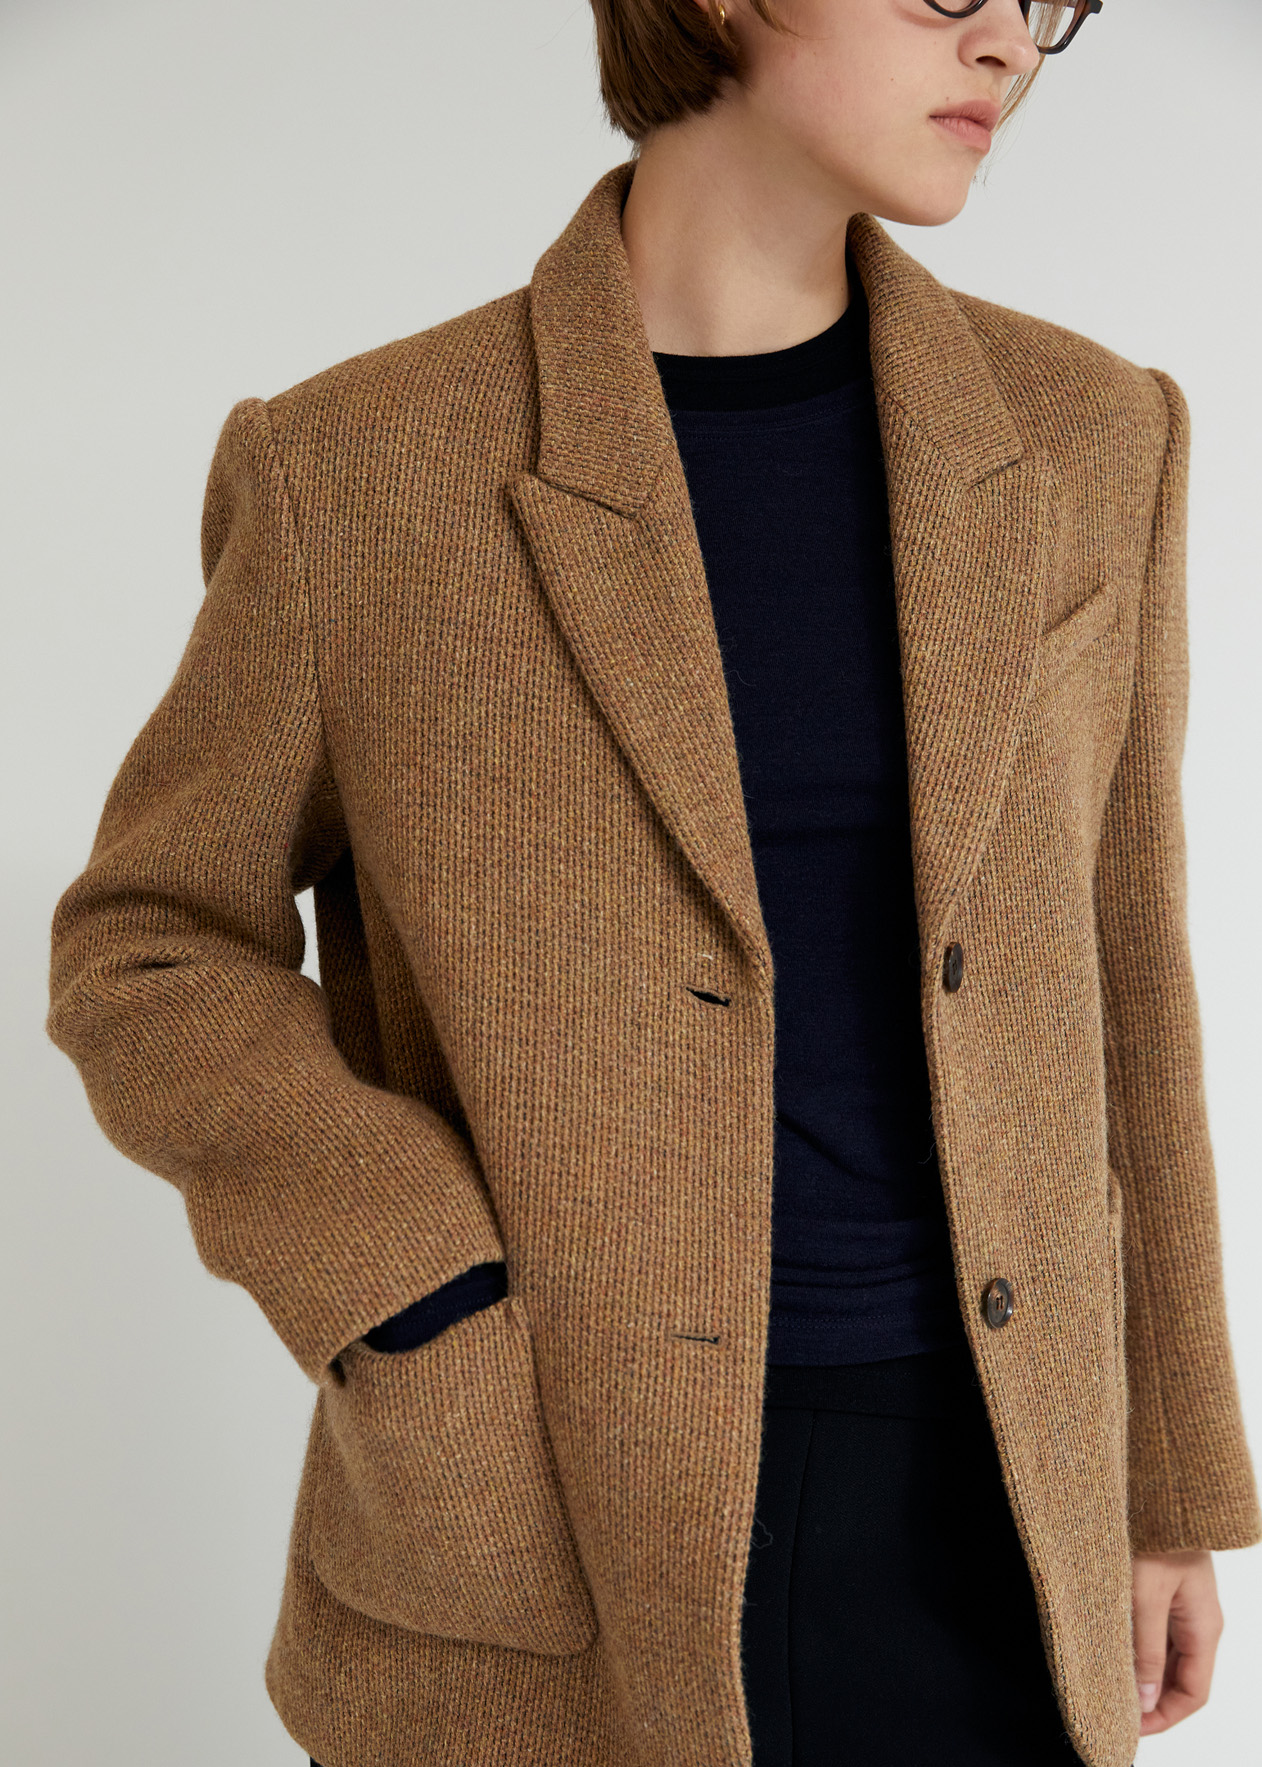 Harry wool jacket